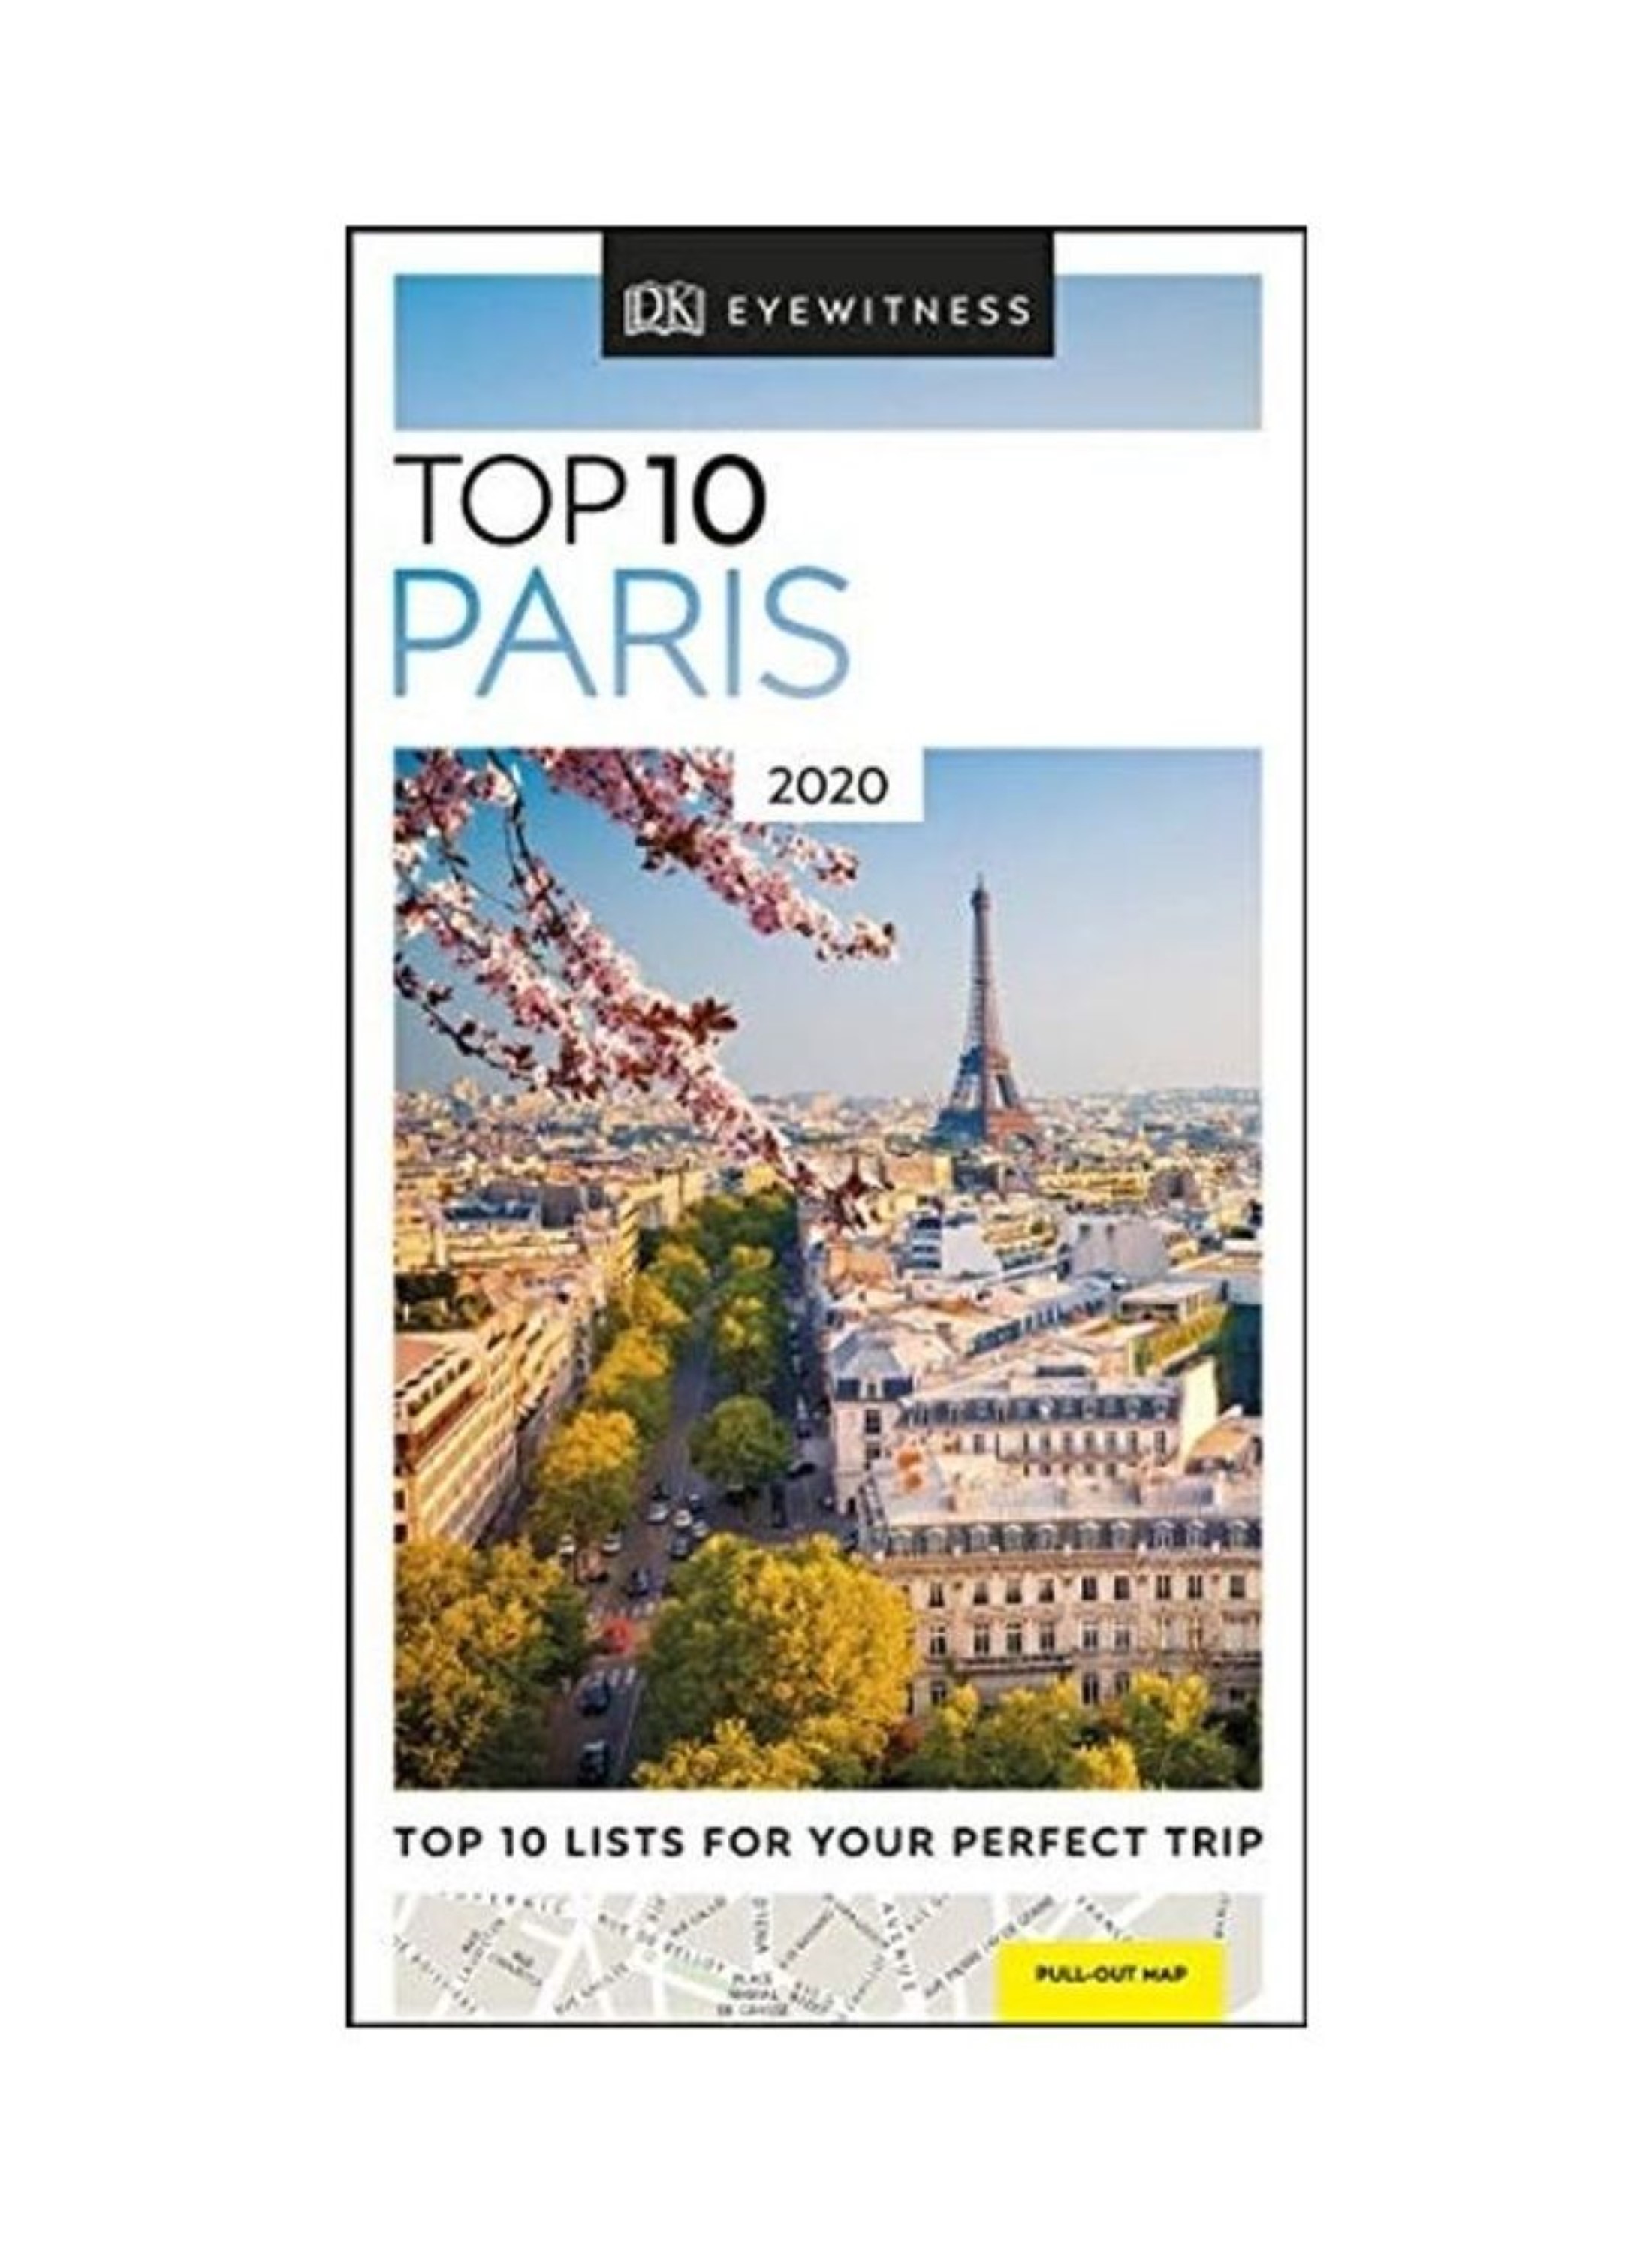 Paris　Eyewitness　Guide　2020　Travel　Dk　Wholesale　Eyewitness　Dk　10　Top　Tradeling